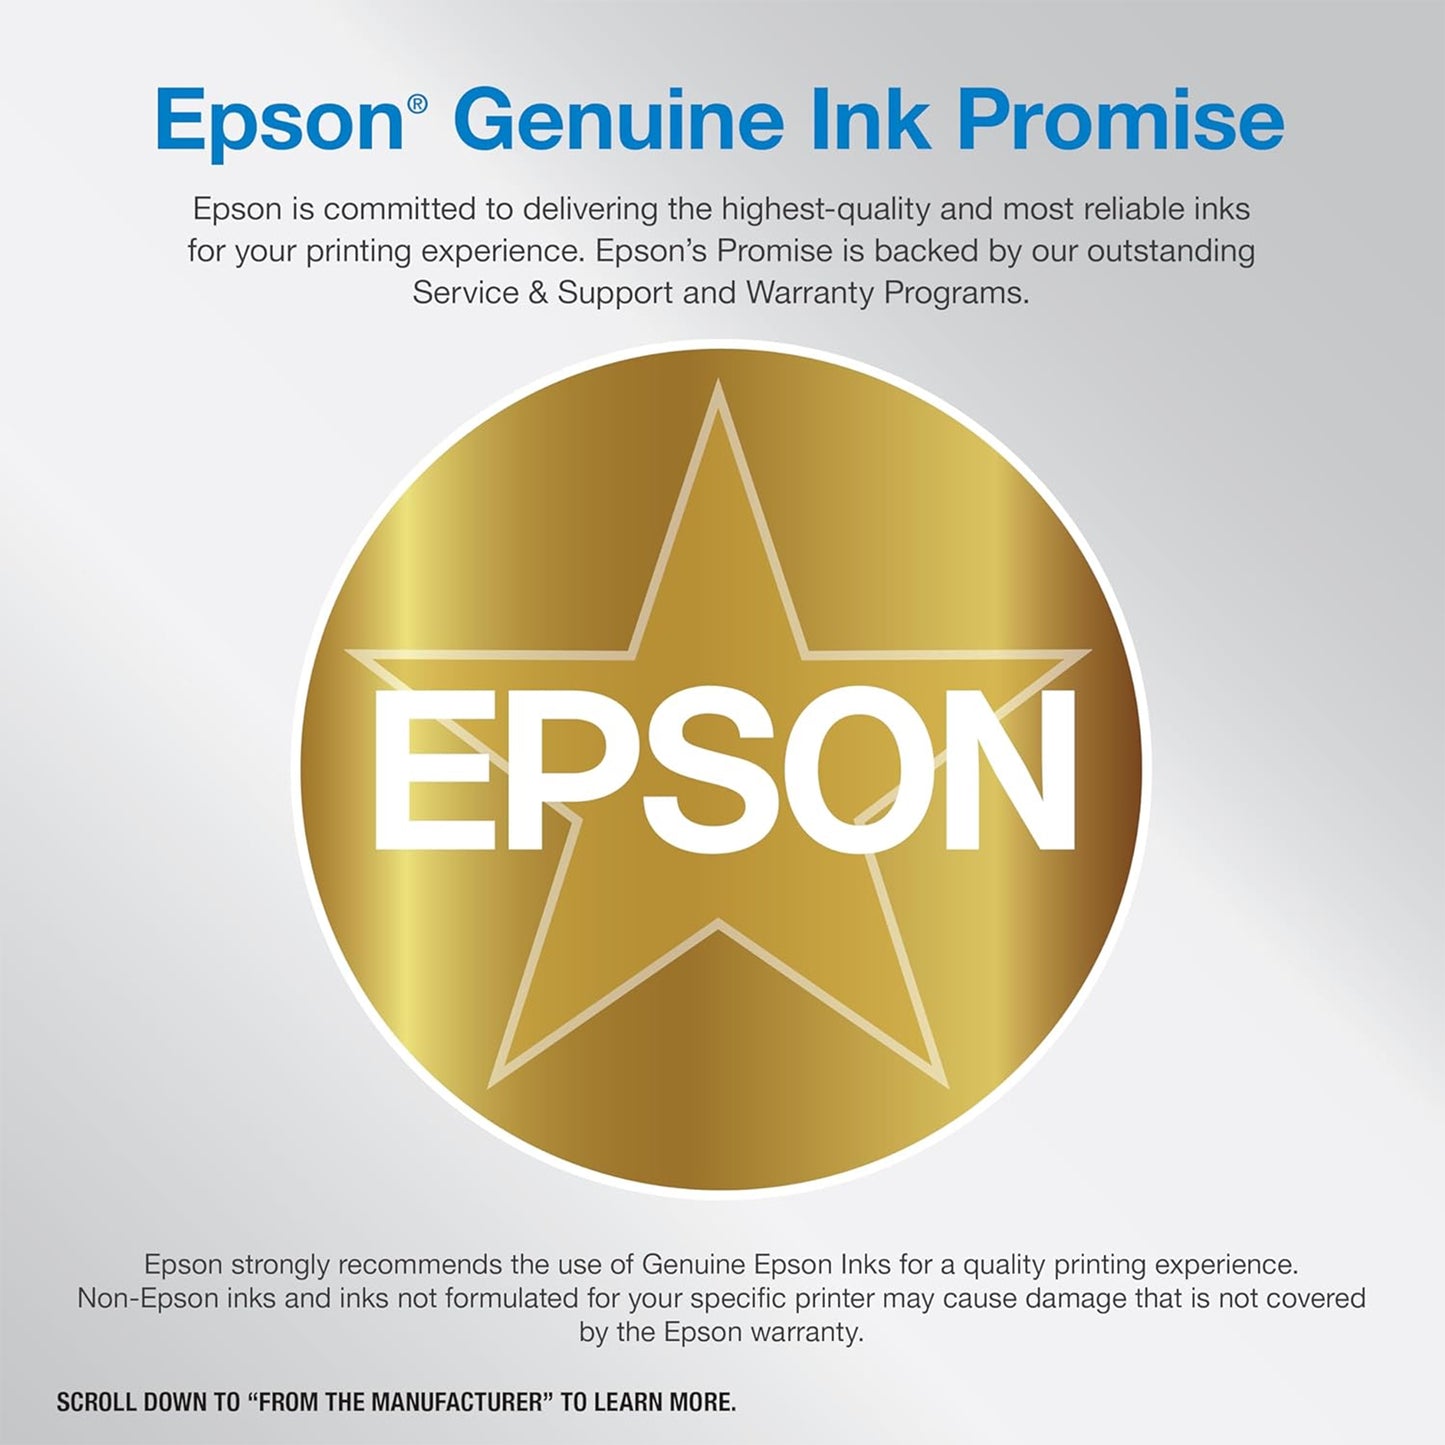 طابعة Epson EcoTank ET-4800 Supertank اللاسلكية الكل في واحد خالية من الخرطوشة مع ماسح ضوئي وناسخة وفاكس ووحدة تغذية المستندات التلقائية وإيثرنت - مثالية لمكتبك المنزلي، باللون الأبيض 